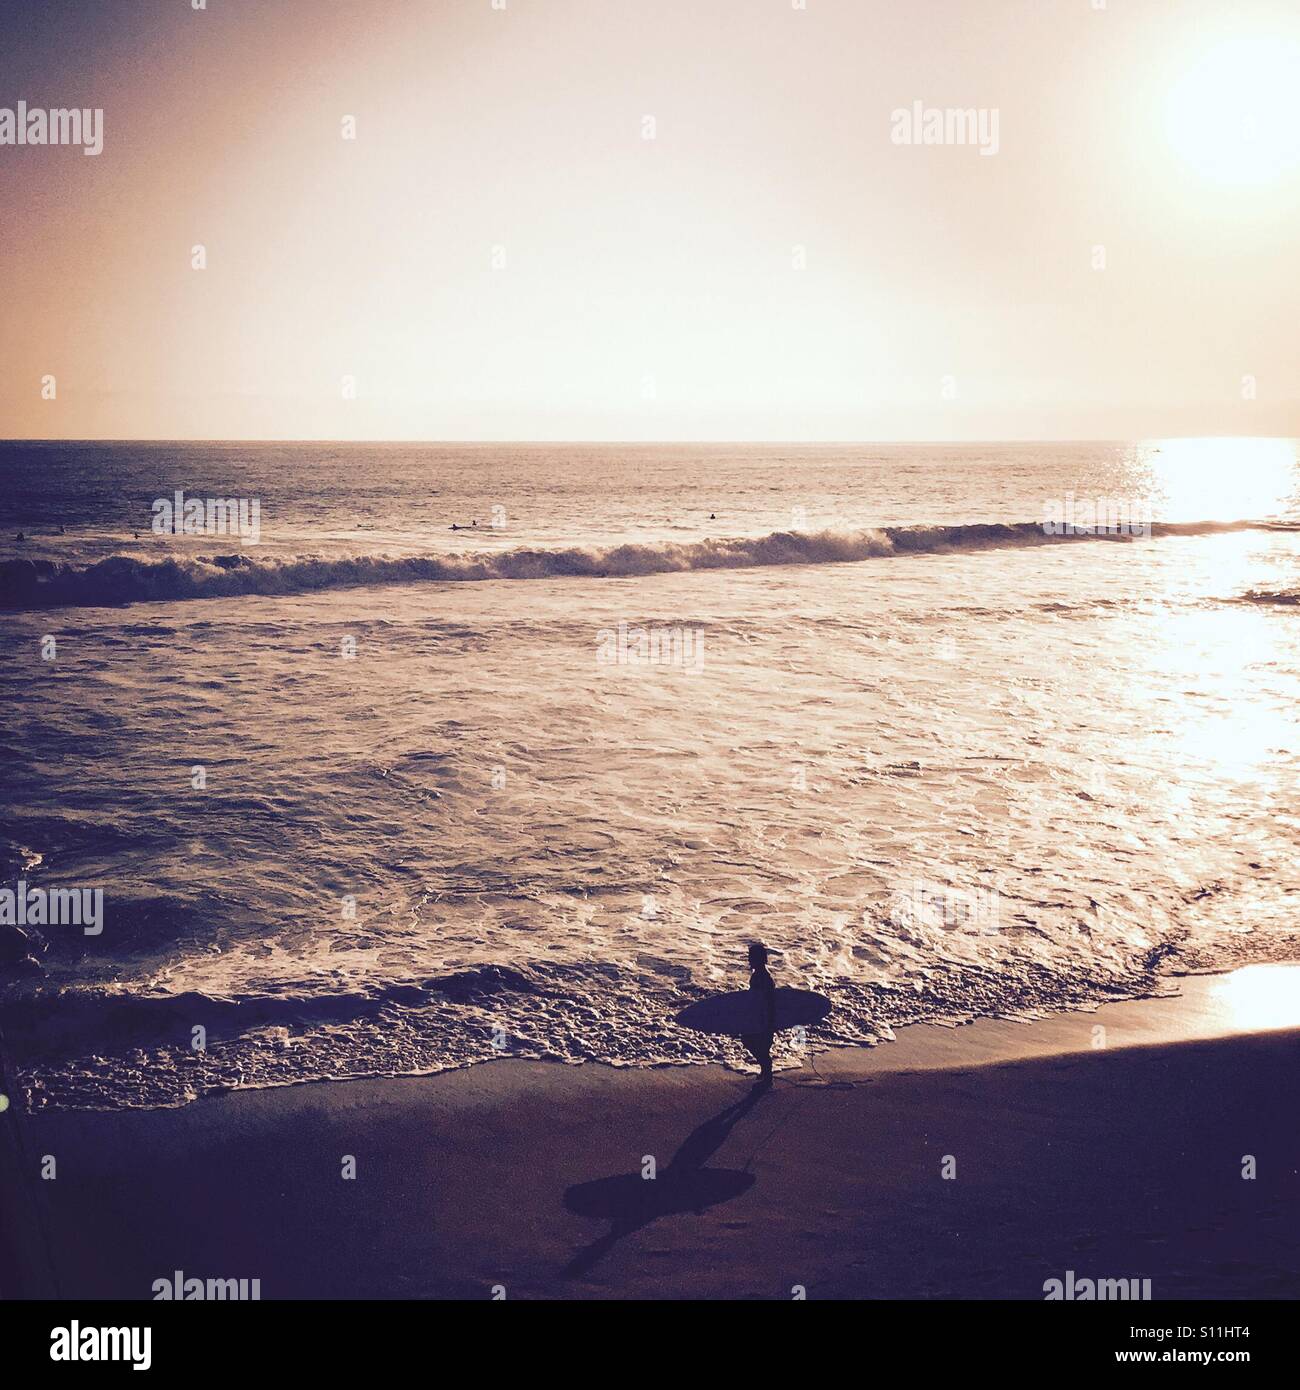 A Surfer walking down the beach checking out the waves. Manhattan Beach, California, USA. Stock Photo